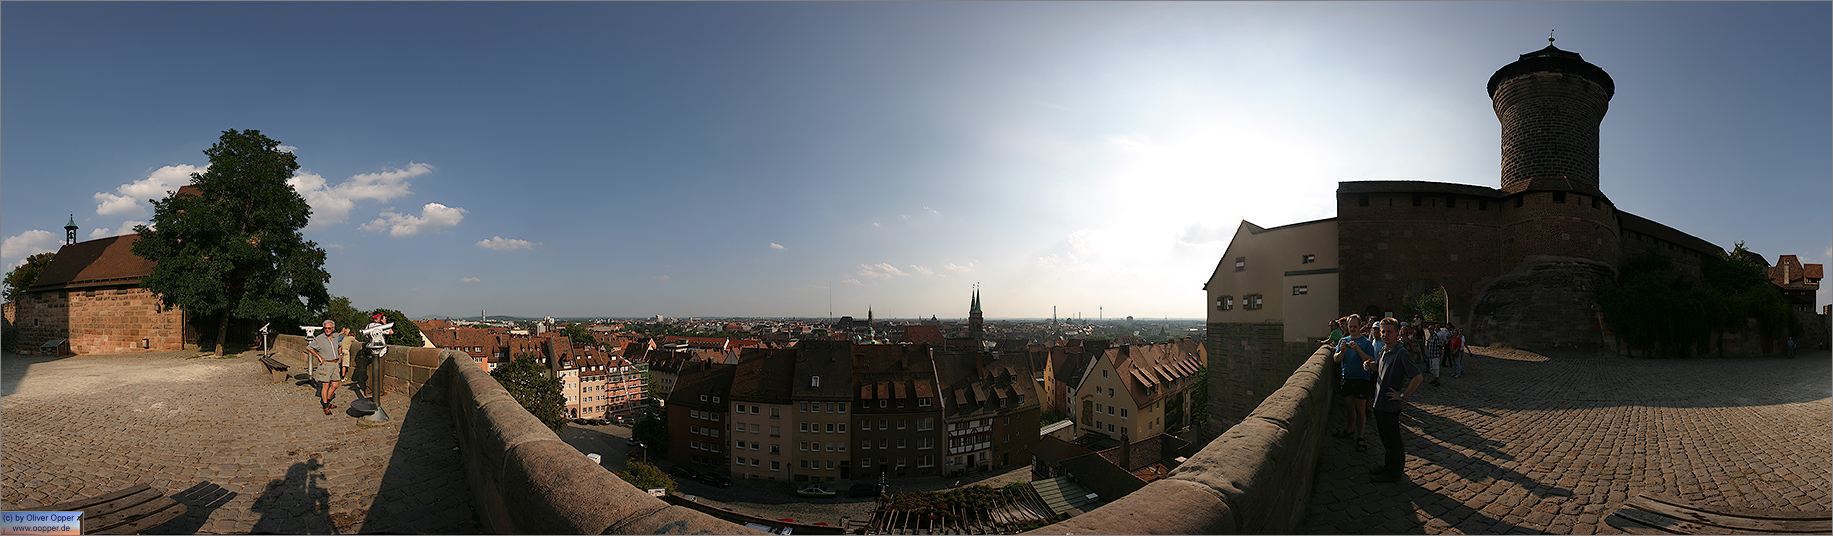 Panorama N�rnberg - Blick von der Burg �ber die Stadt - p016 - (c) by Oliver Opper